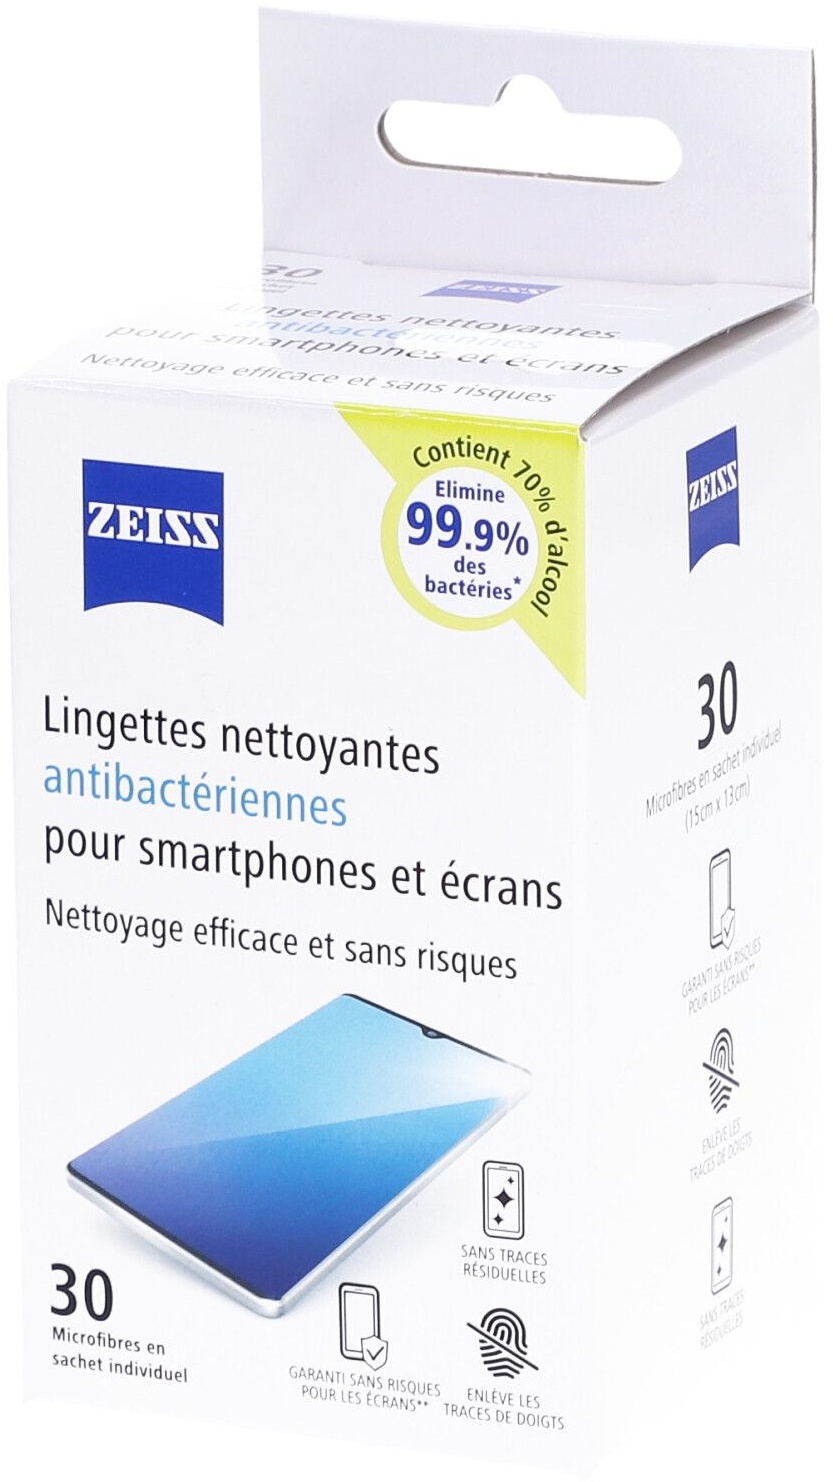 ZEISS Lingettes optiques nettoyante antibactérienne pour écrans de smartphone lingette(s)